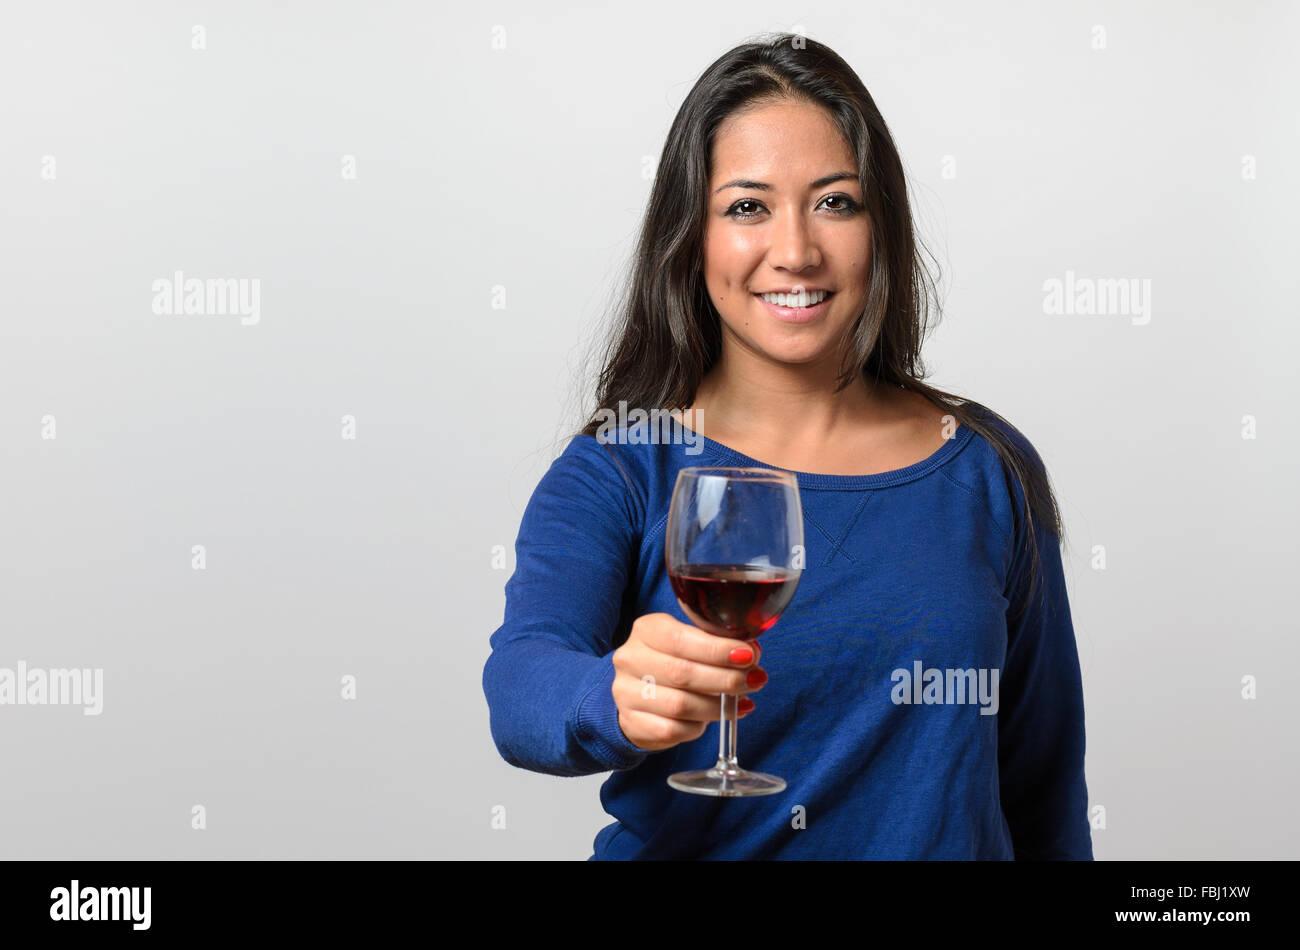 Copa de vino – Copiservisanfer: Llévate una buena impresión